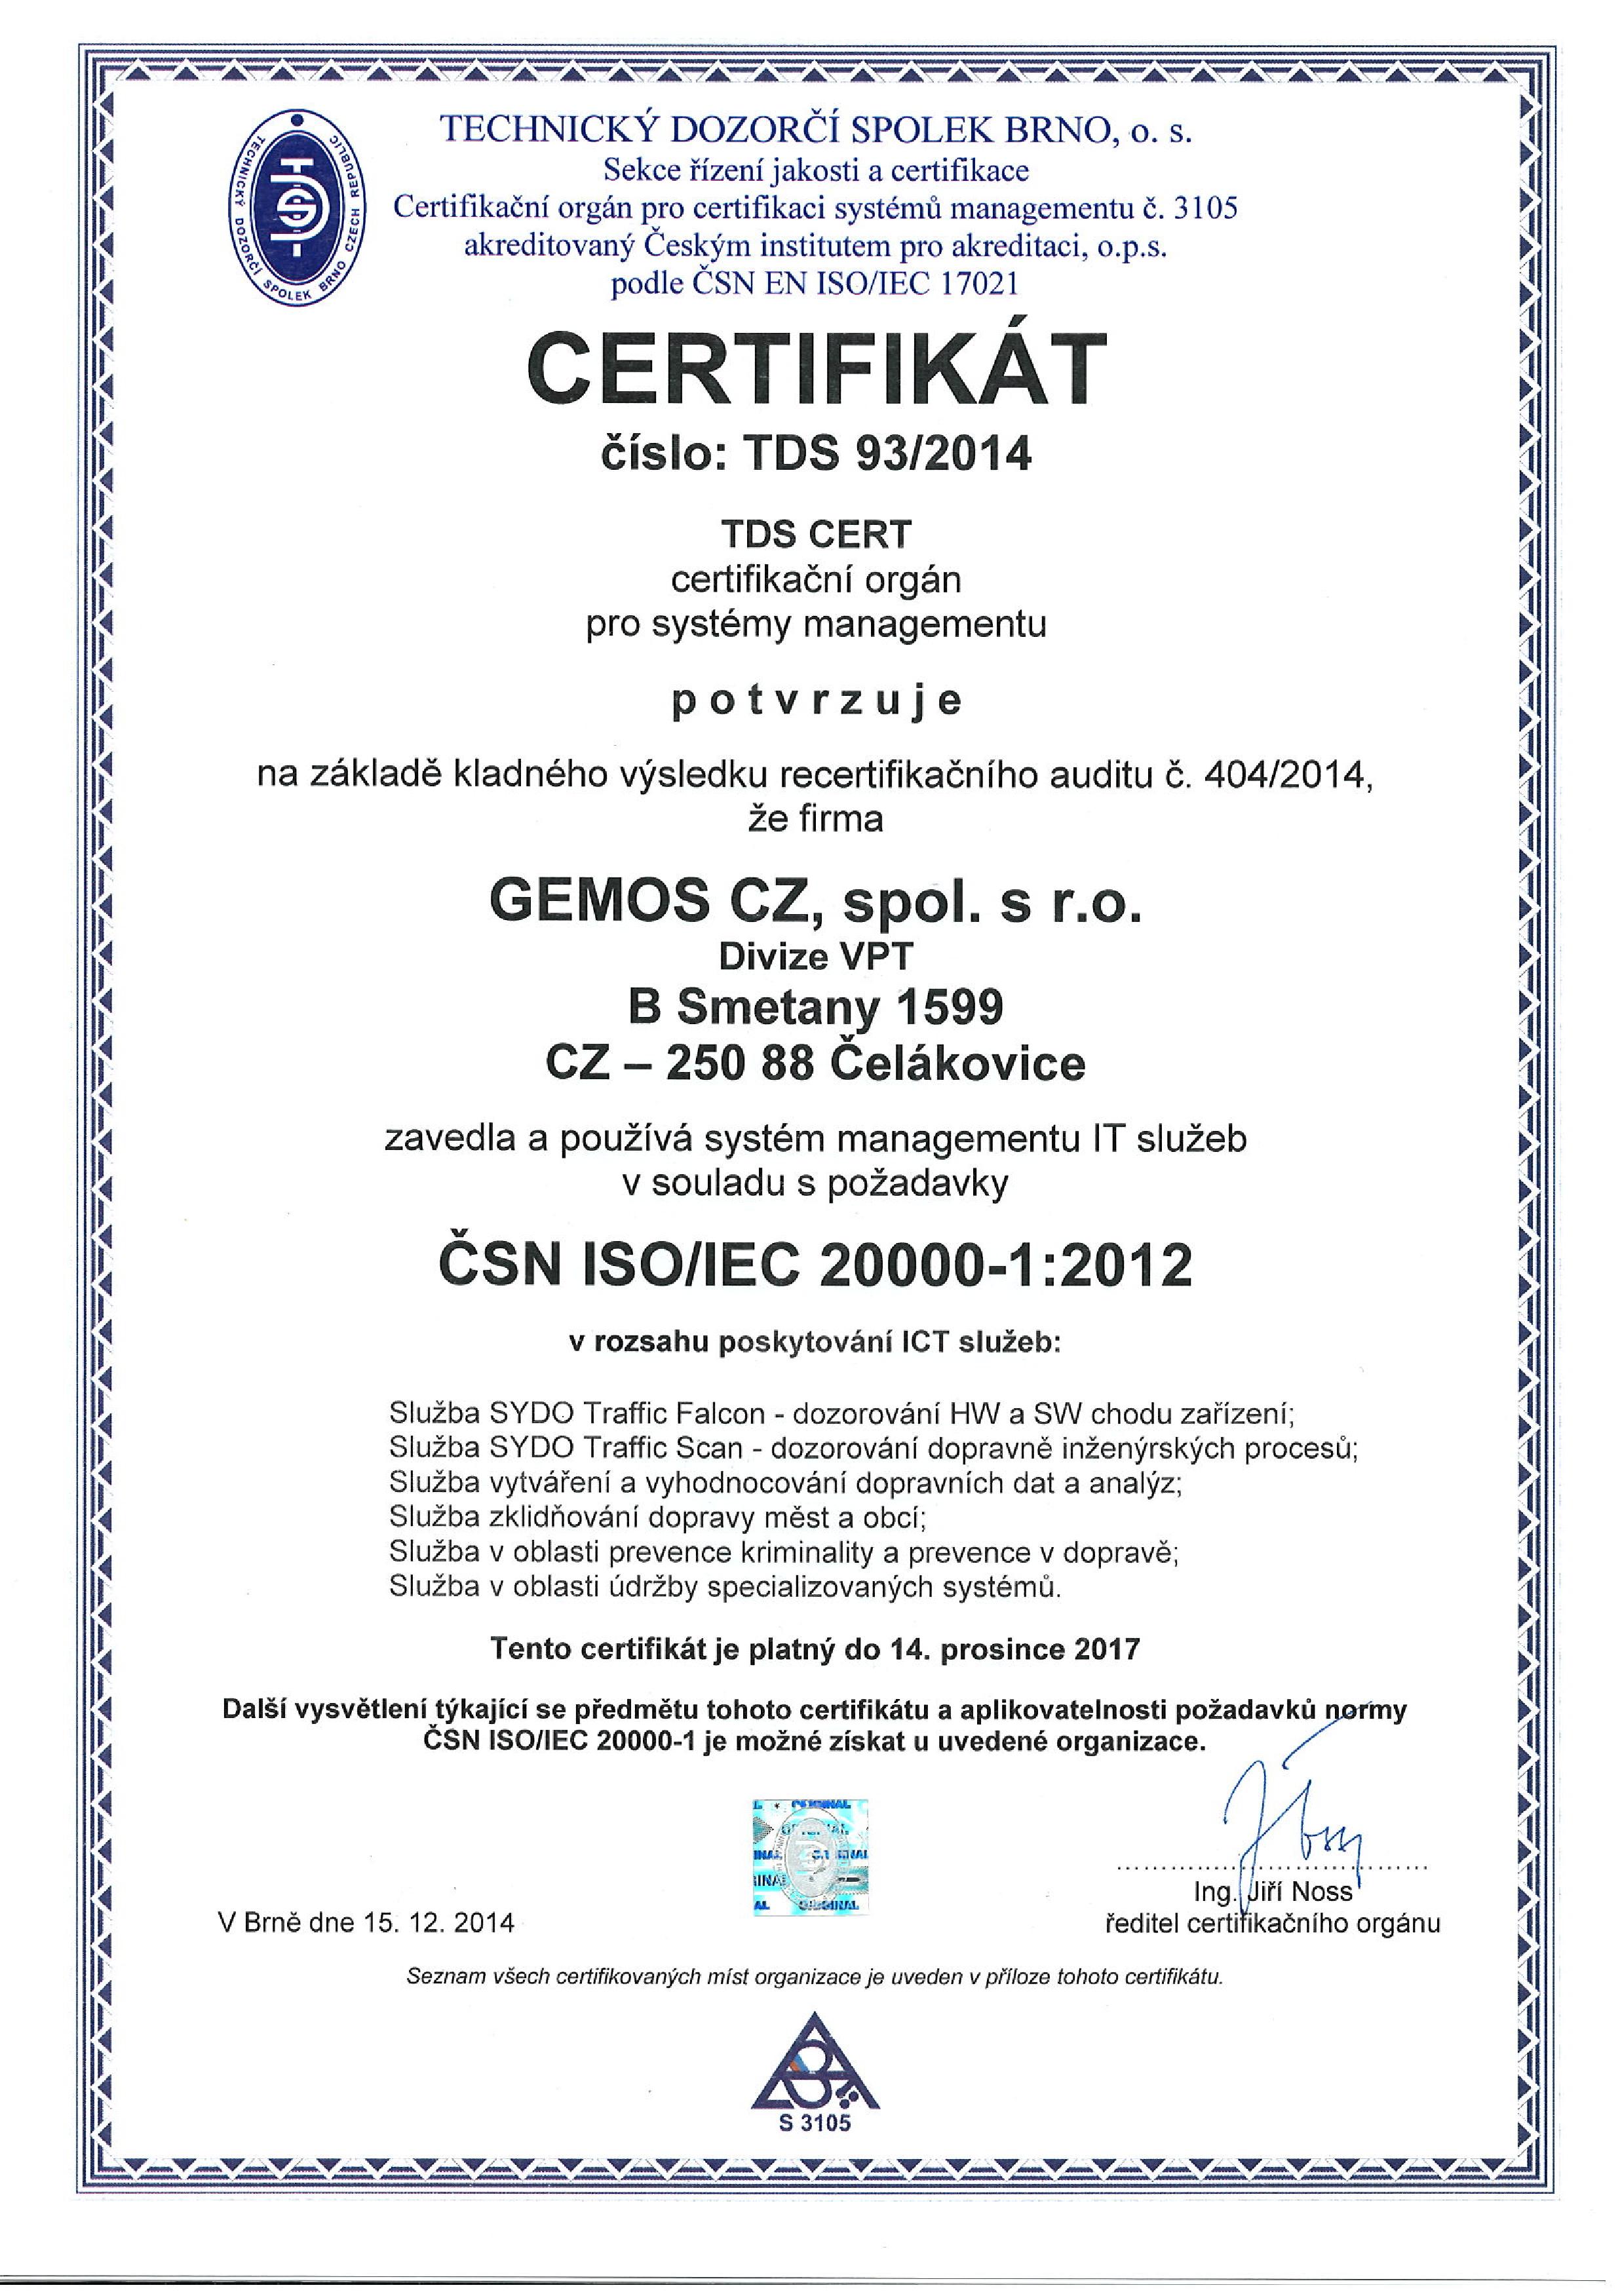 Certifikát ČSN ISO/IEC 20 000-1 udělený společnosti Gemos